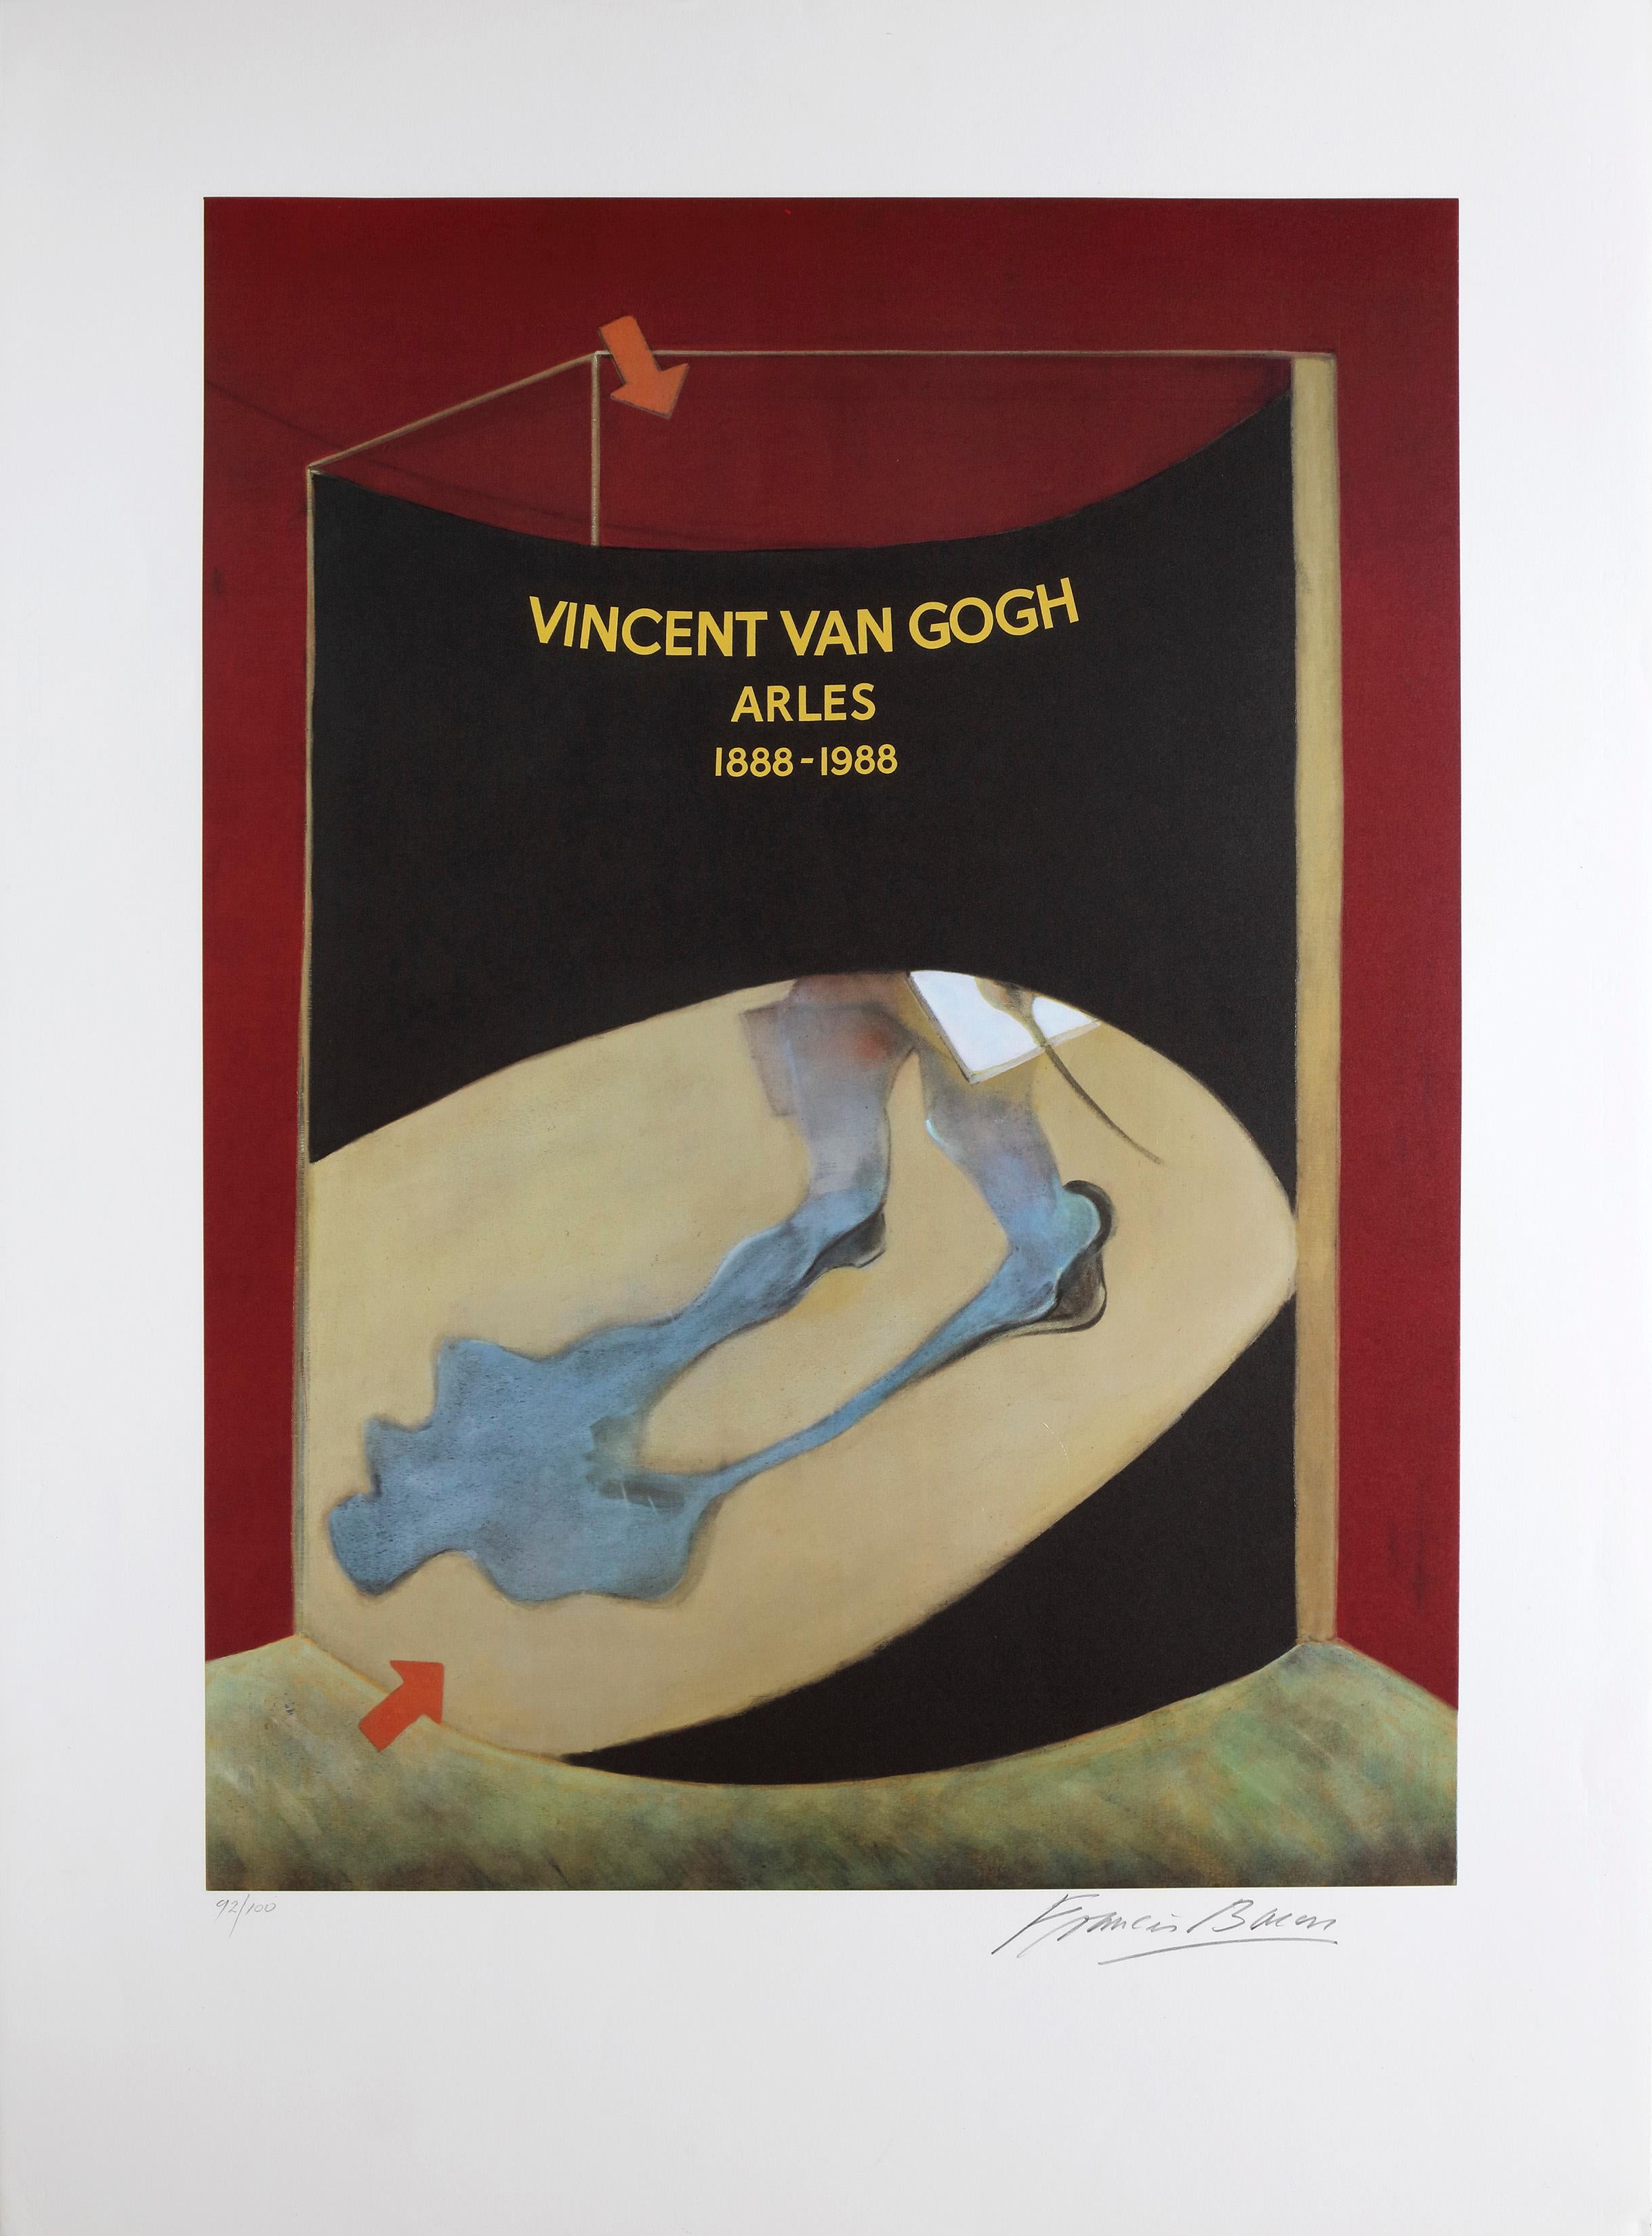 Van Gogh Exhibition 1988 - Print by Francis Bacon